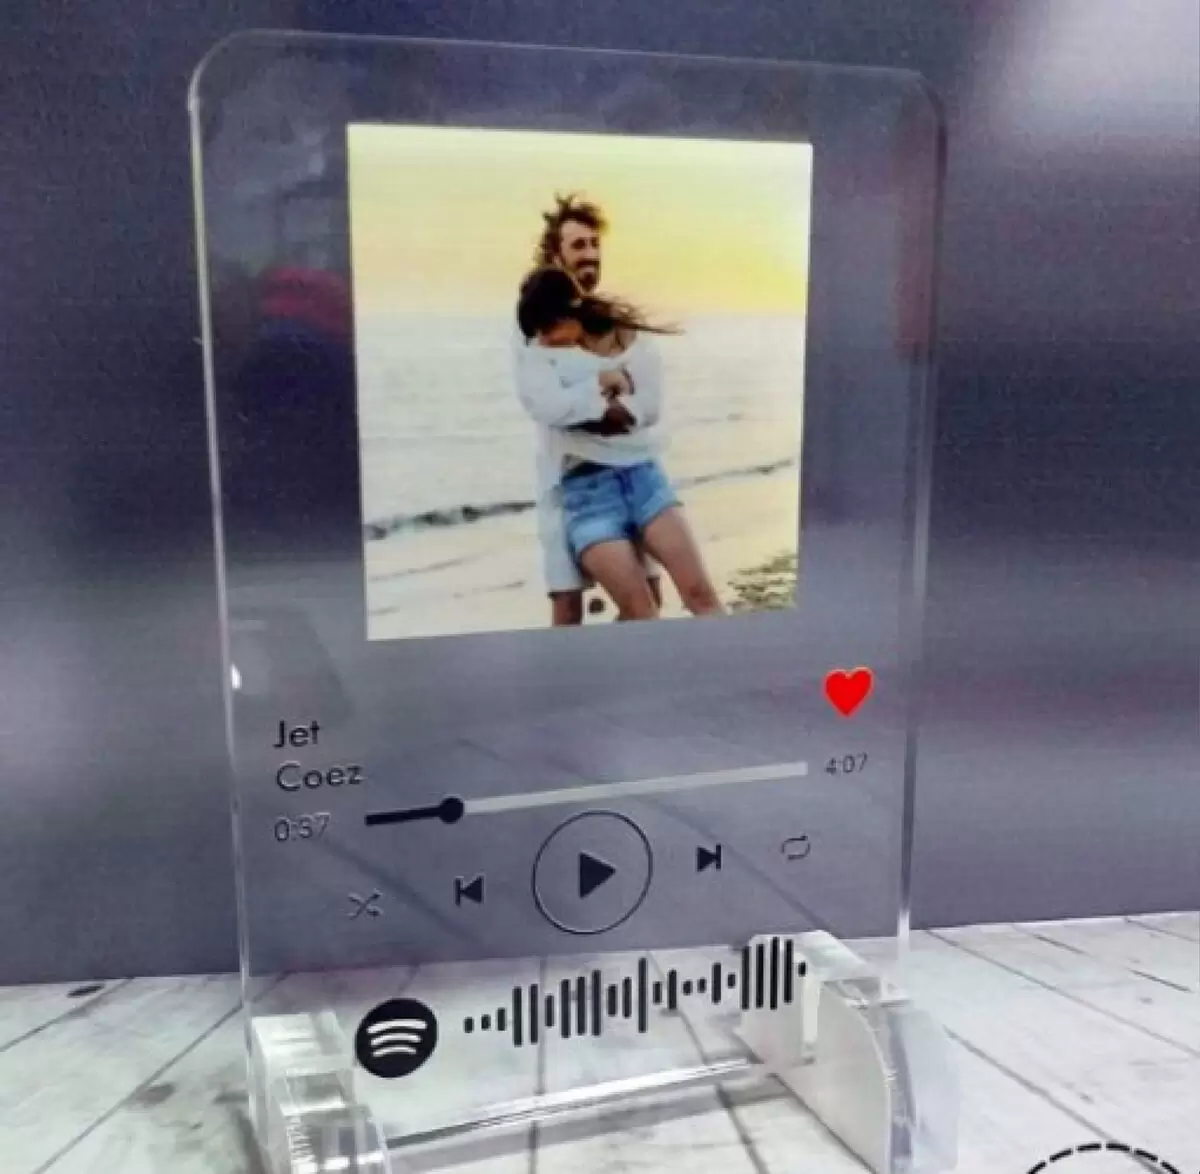 Targa Spotify Personalizzata con Foto - Plexiglass Trasparente